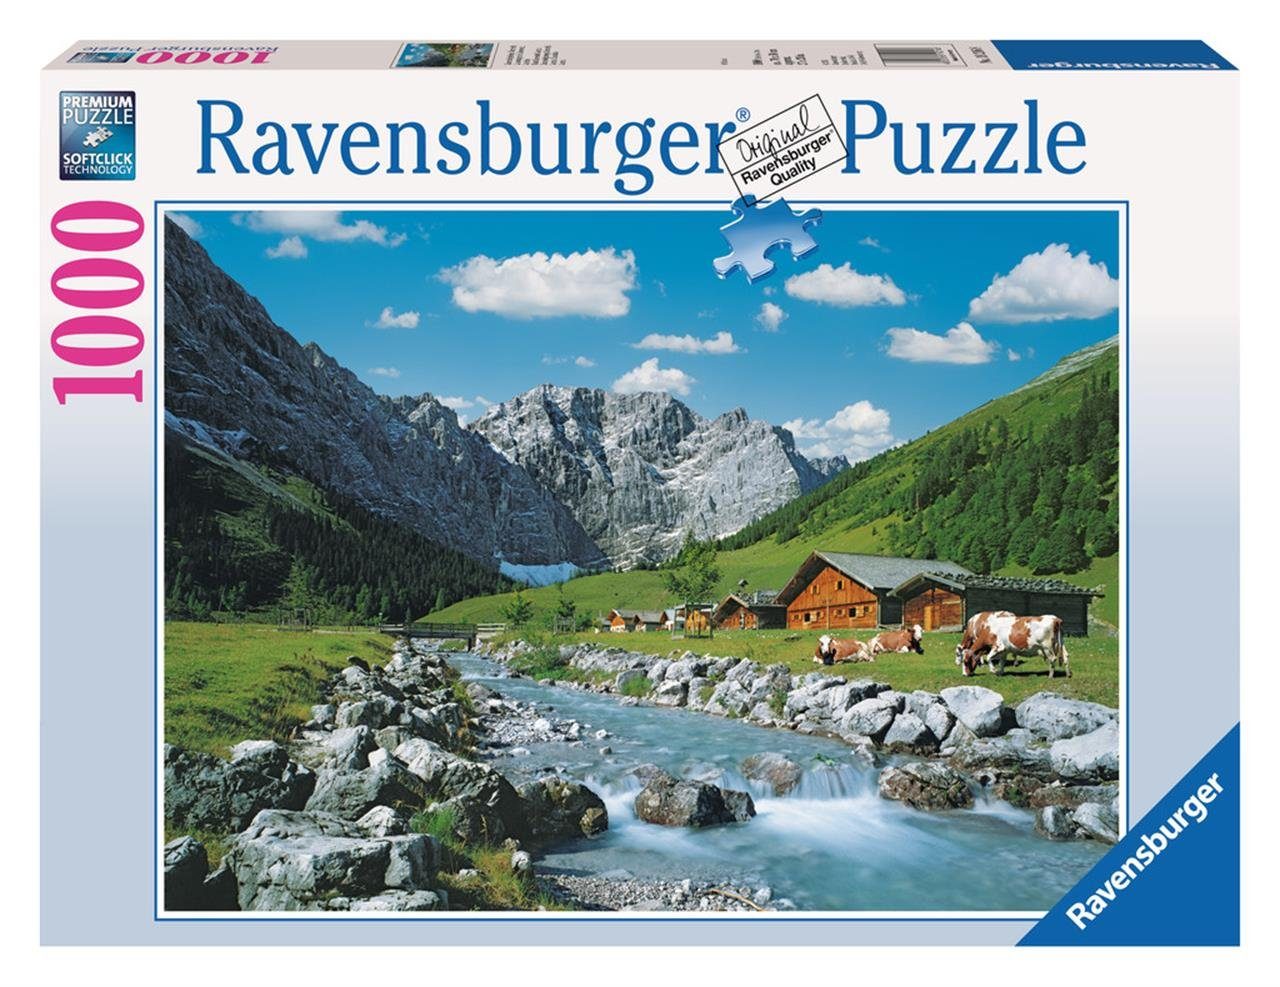 Ravensburger Puzzle Pz. Karwendelgebirge Österreich 1000 Teile, Puzzleteile